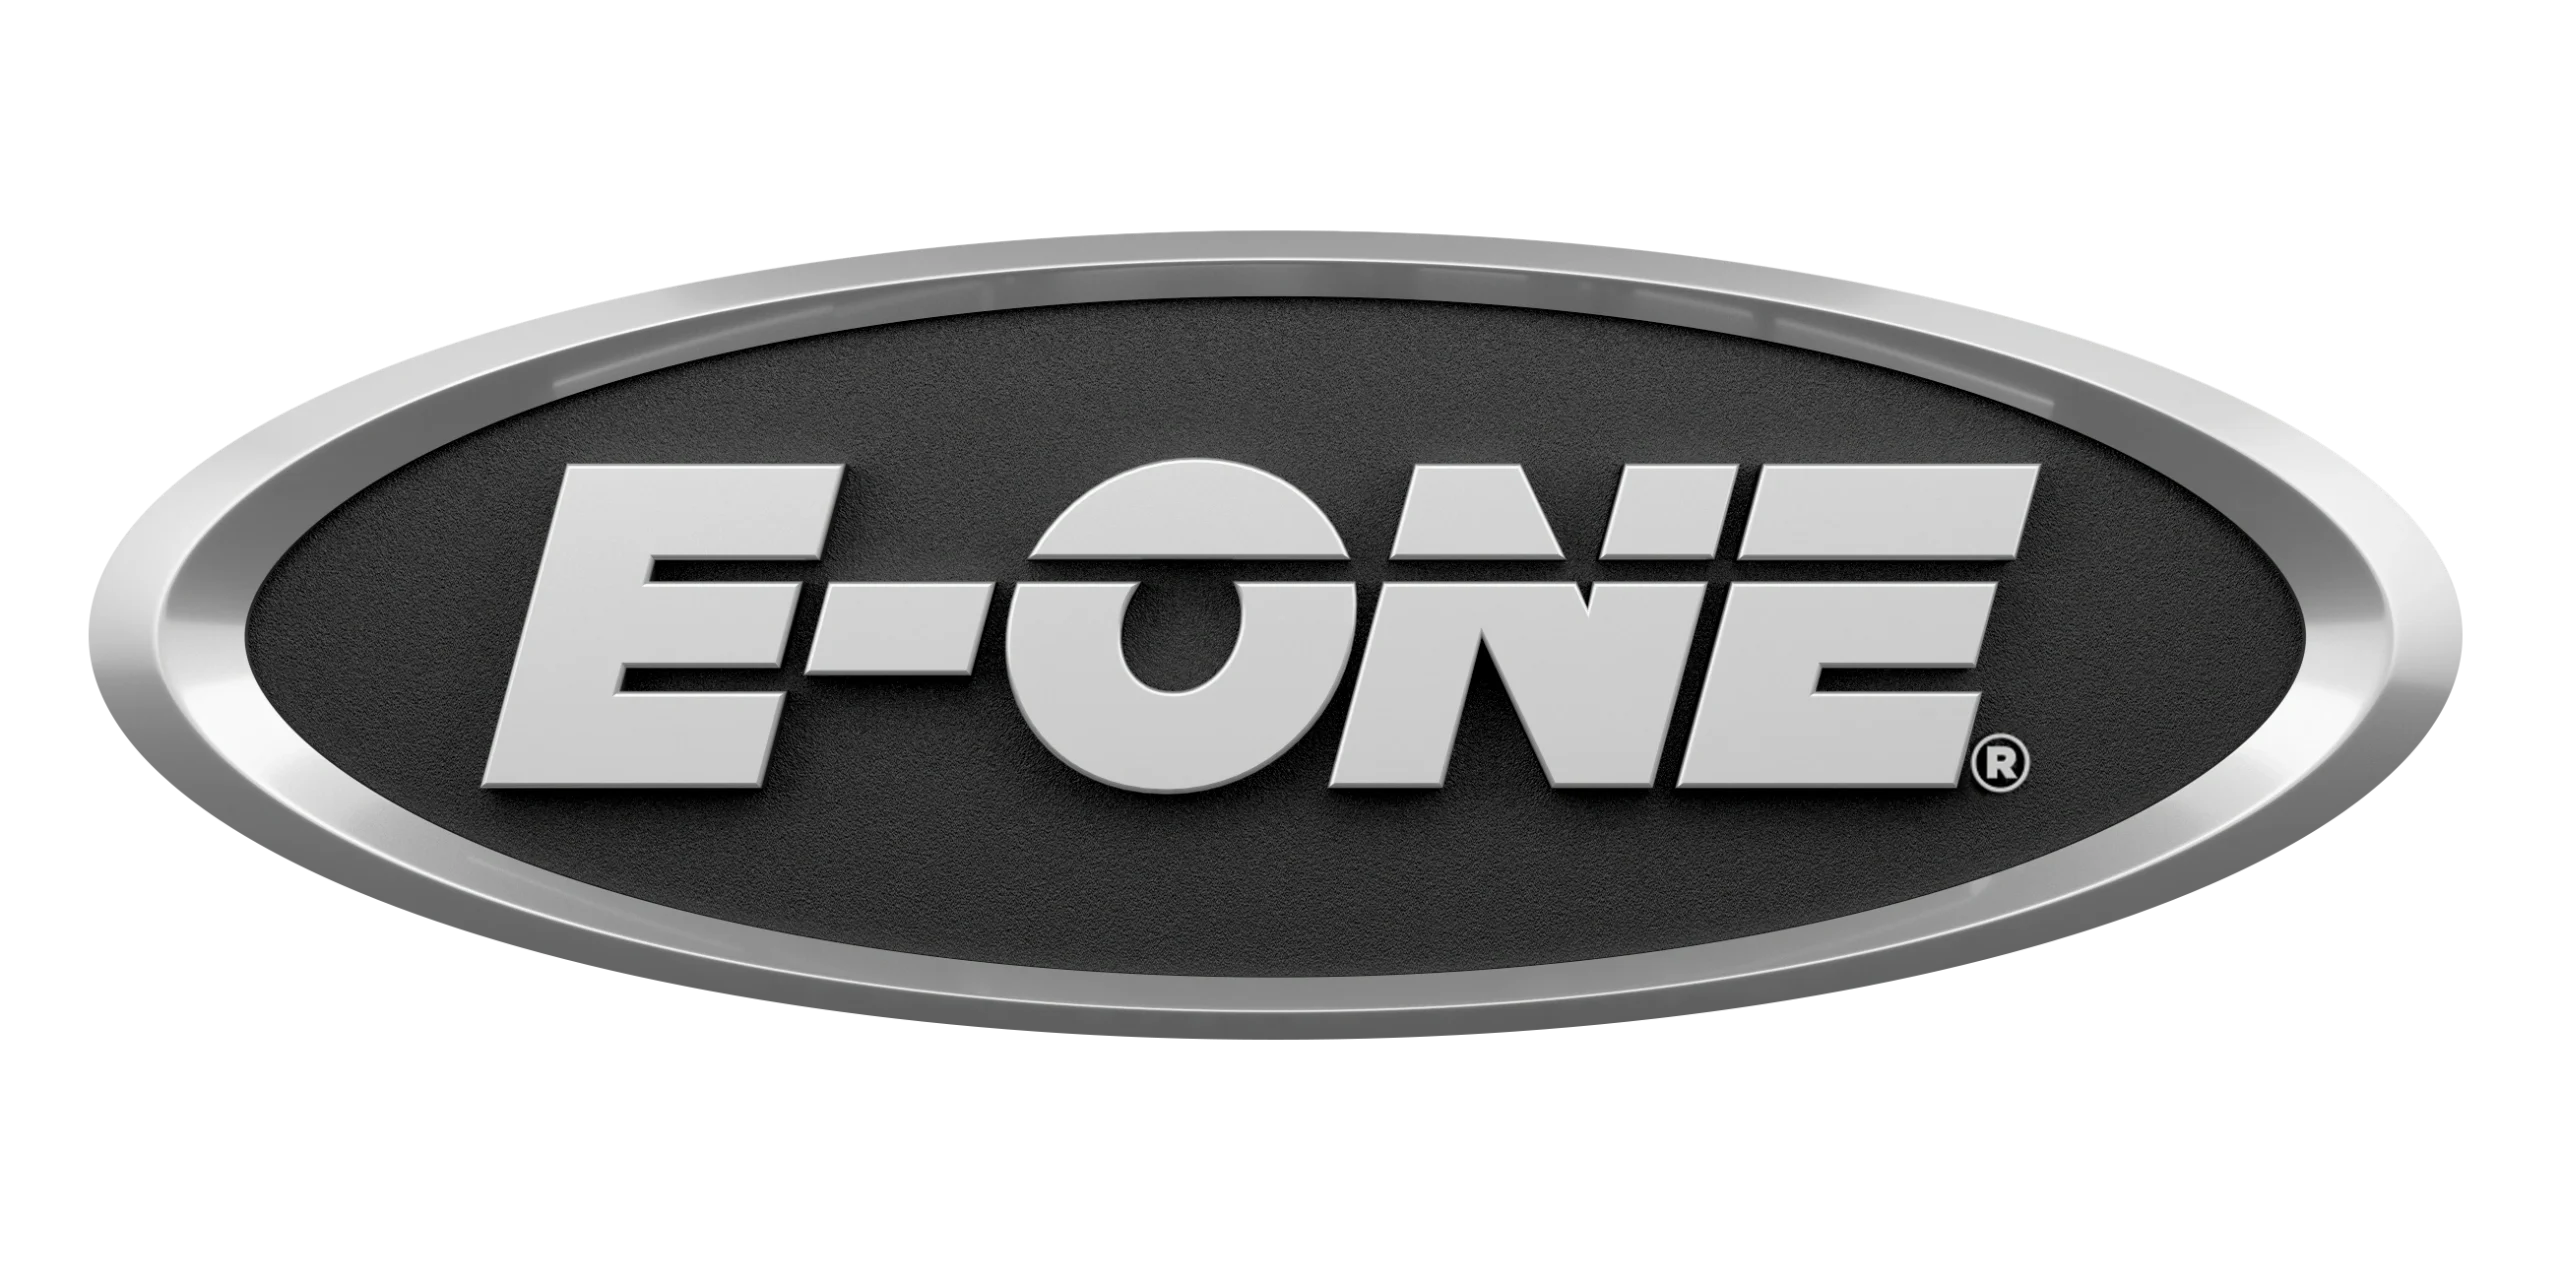 E-One